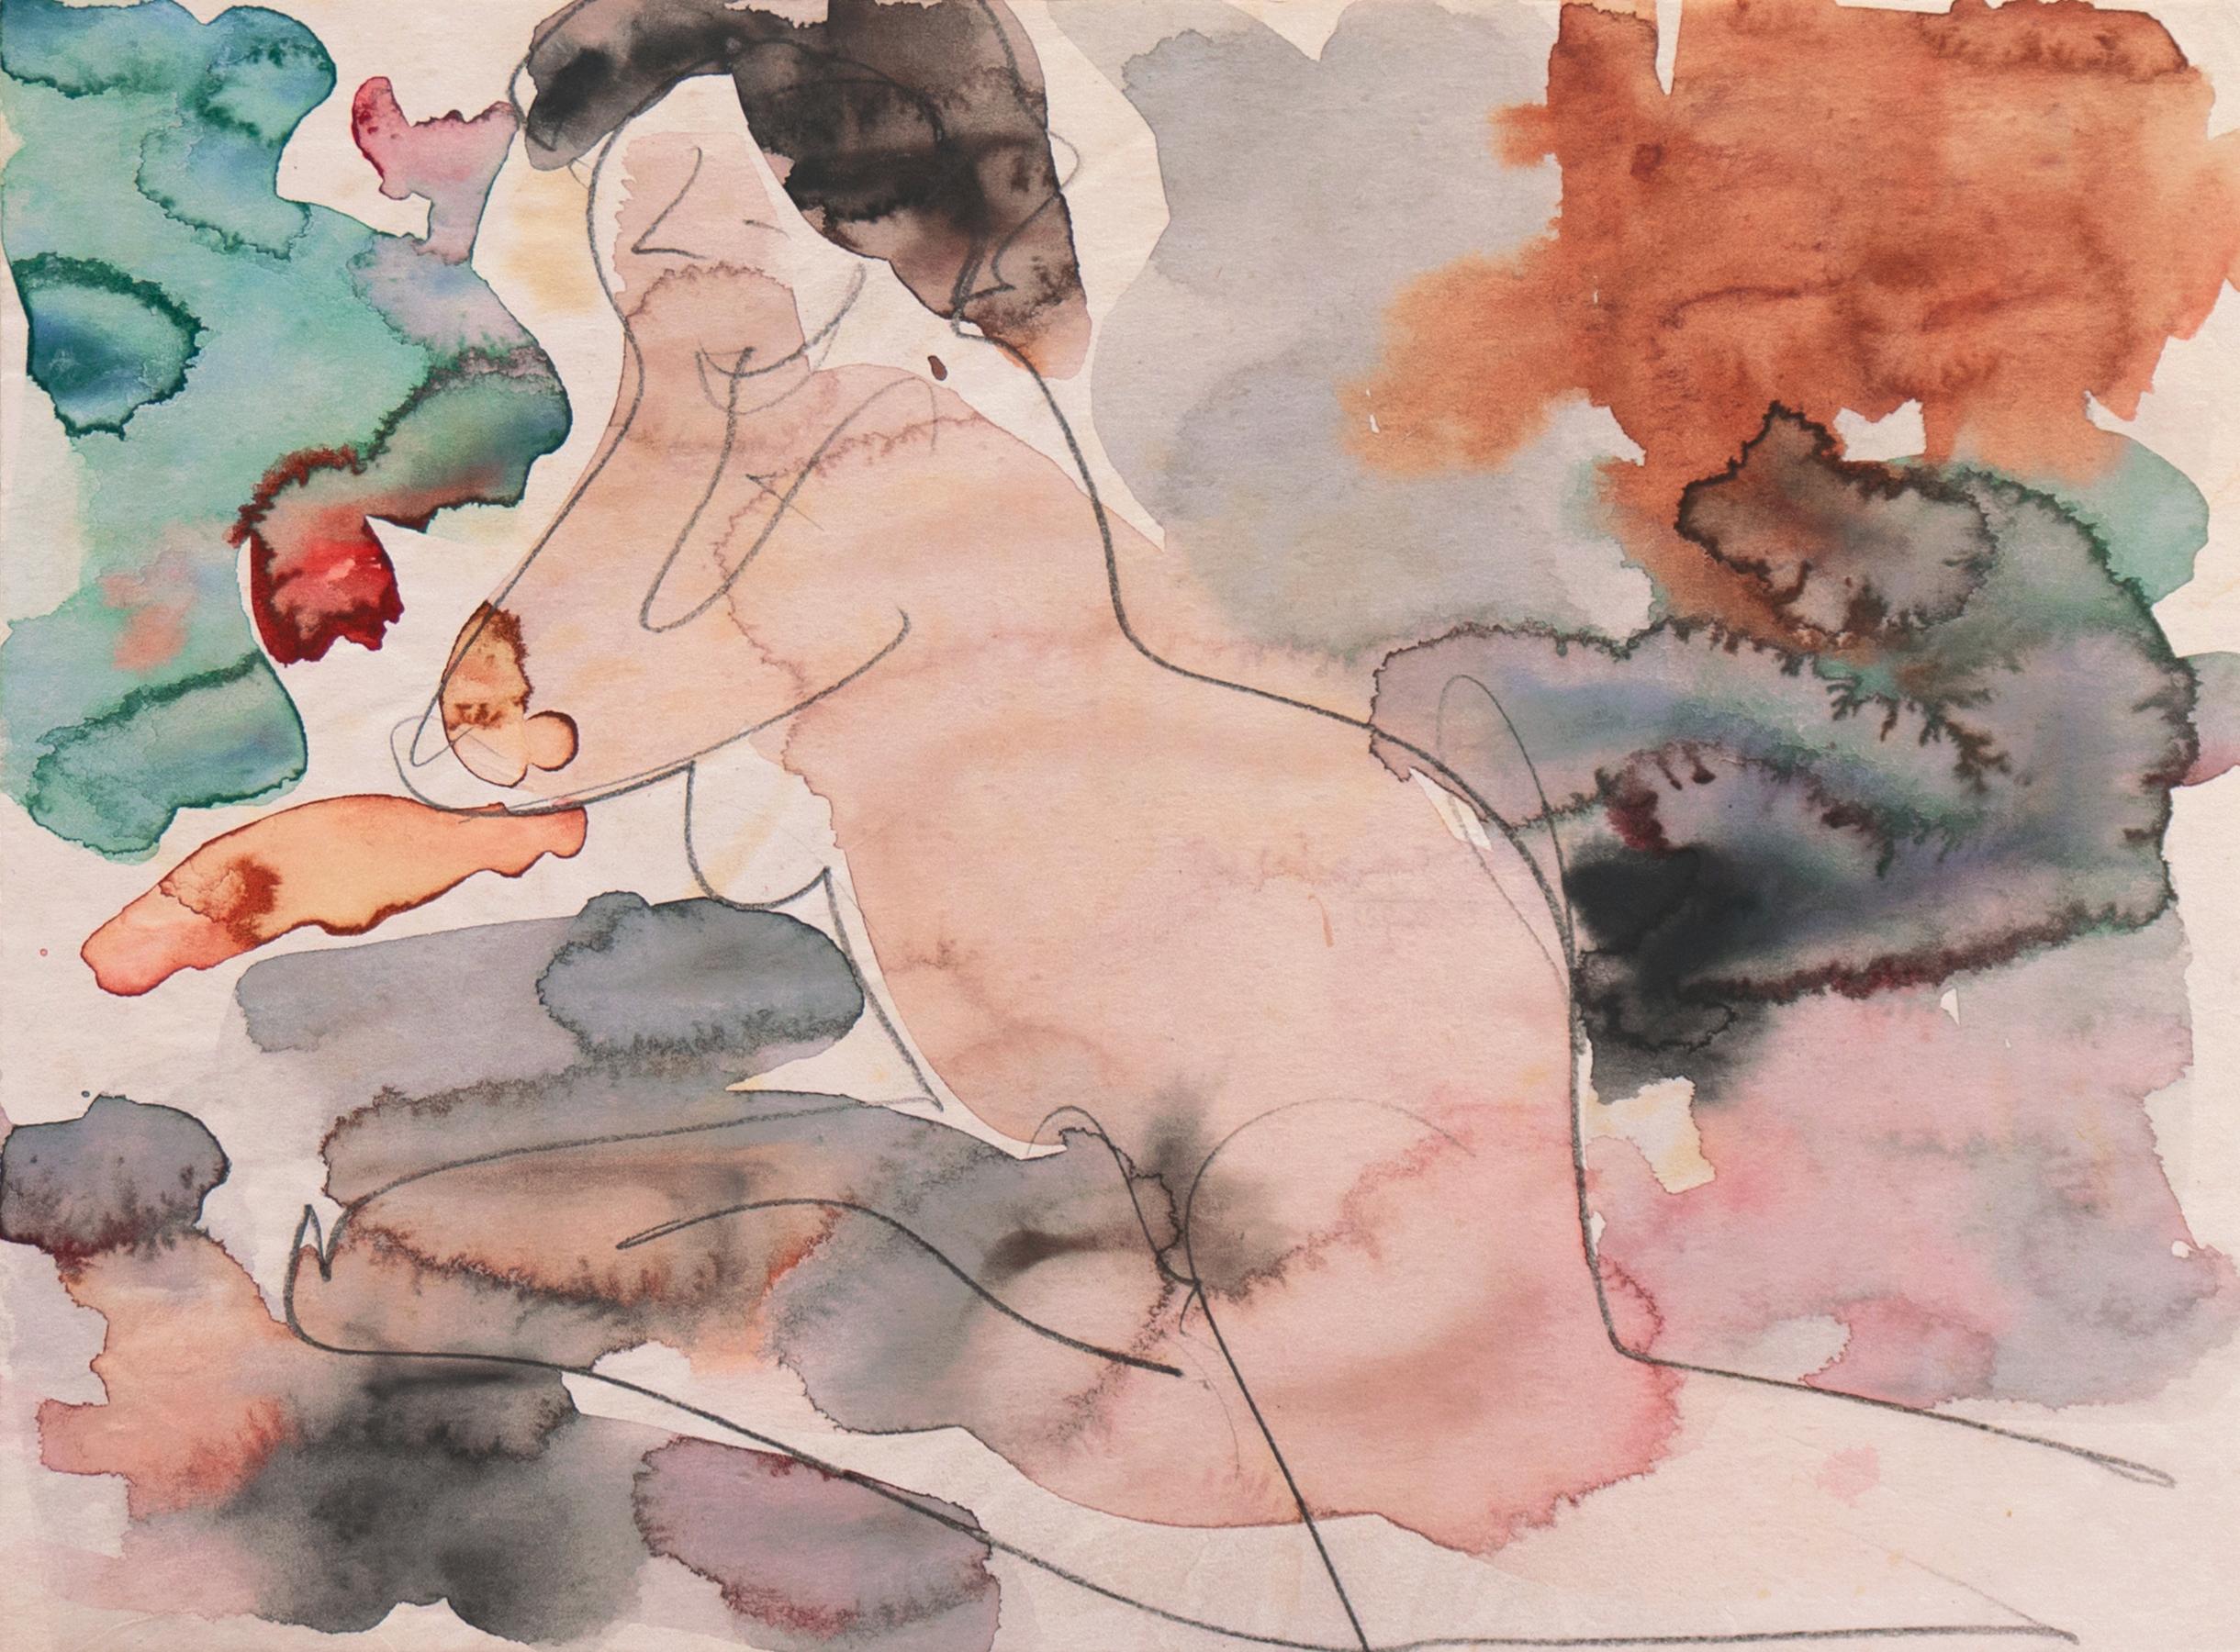 Victor Di Gesu Figurative Art - 'Seated Nude', Paris, Louvre, Académie Chaumière, Salon D'Automne, LACMA, SFAA